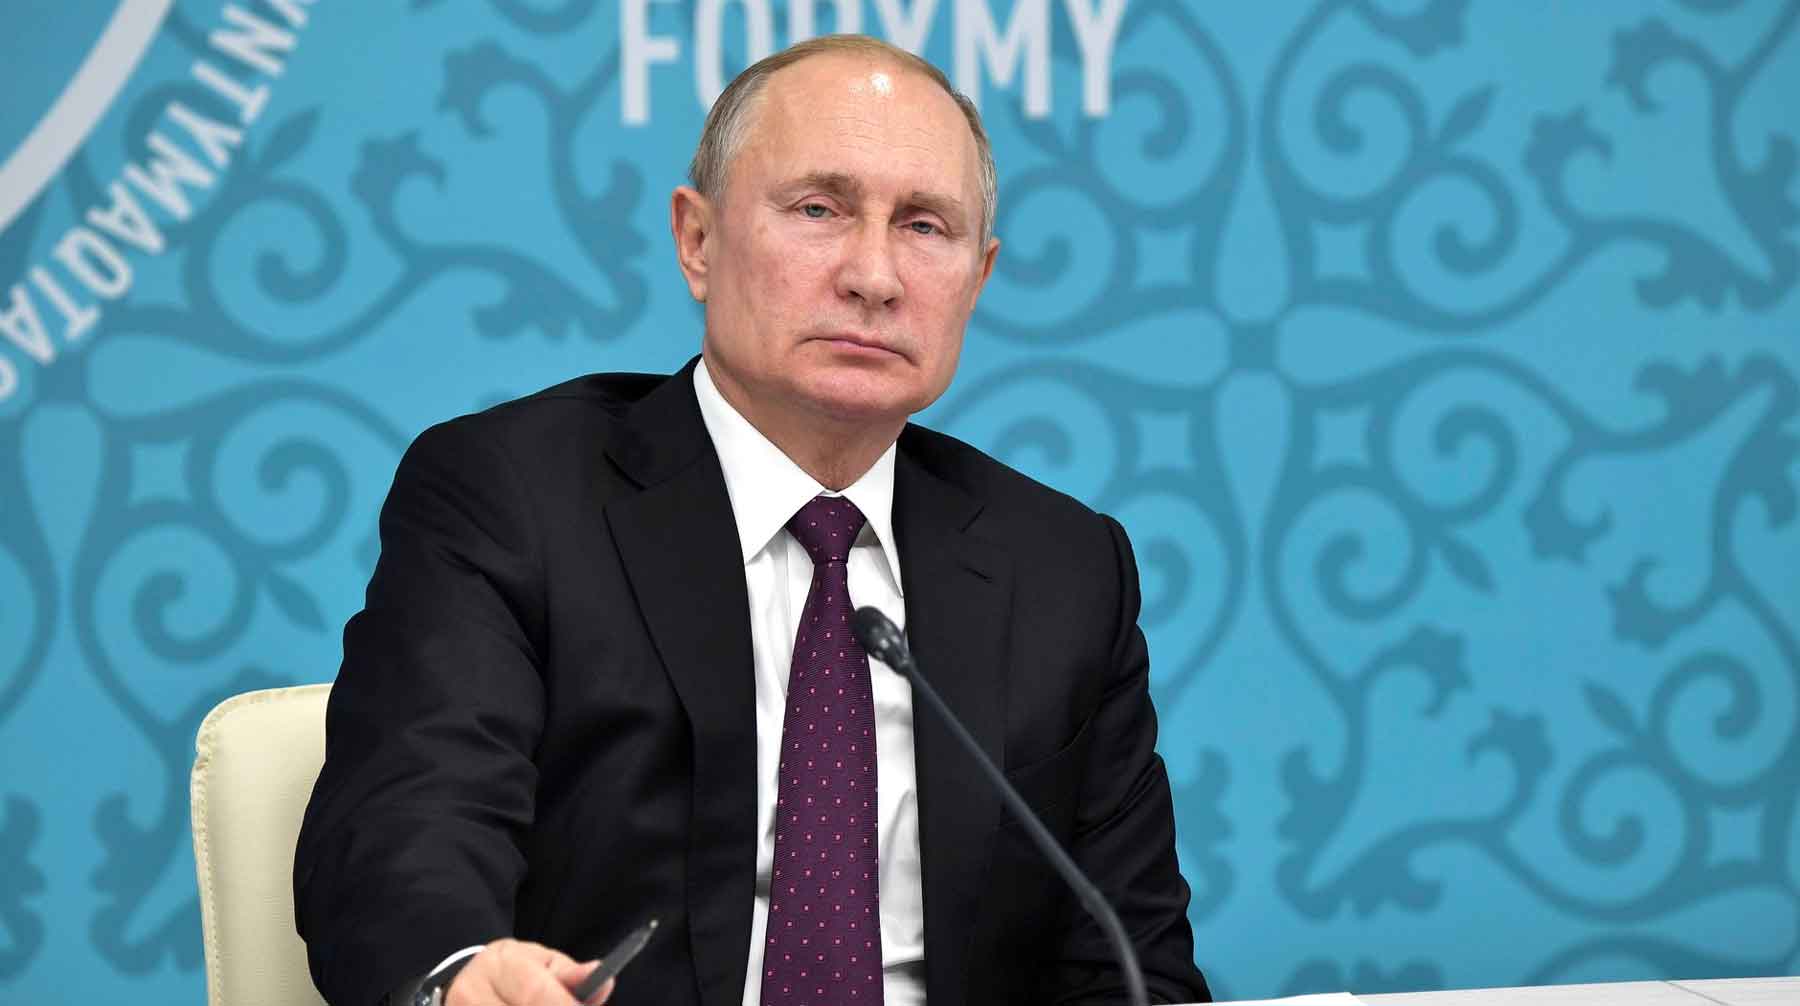 Конфессии могут послужить укреплению мира и согласия в России, заметил президент Фото: © GLOBAL LOOK press / Kremlin Pool